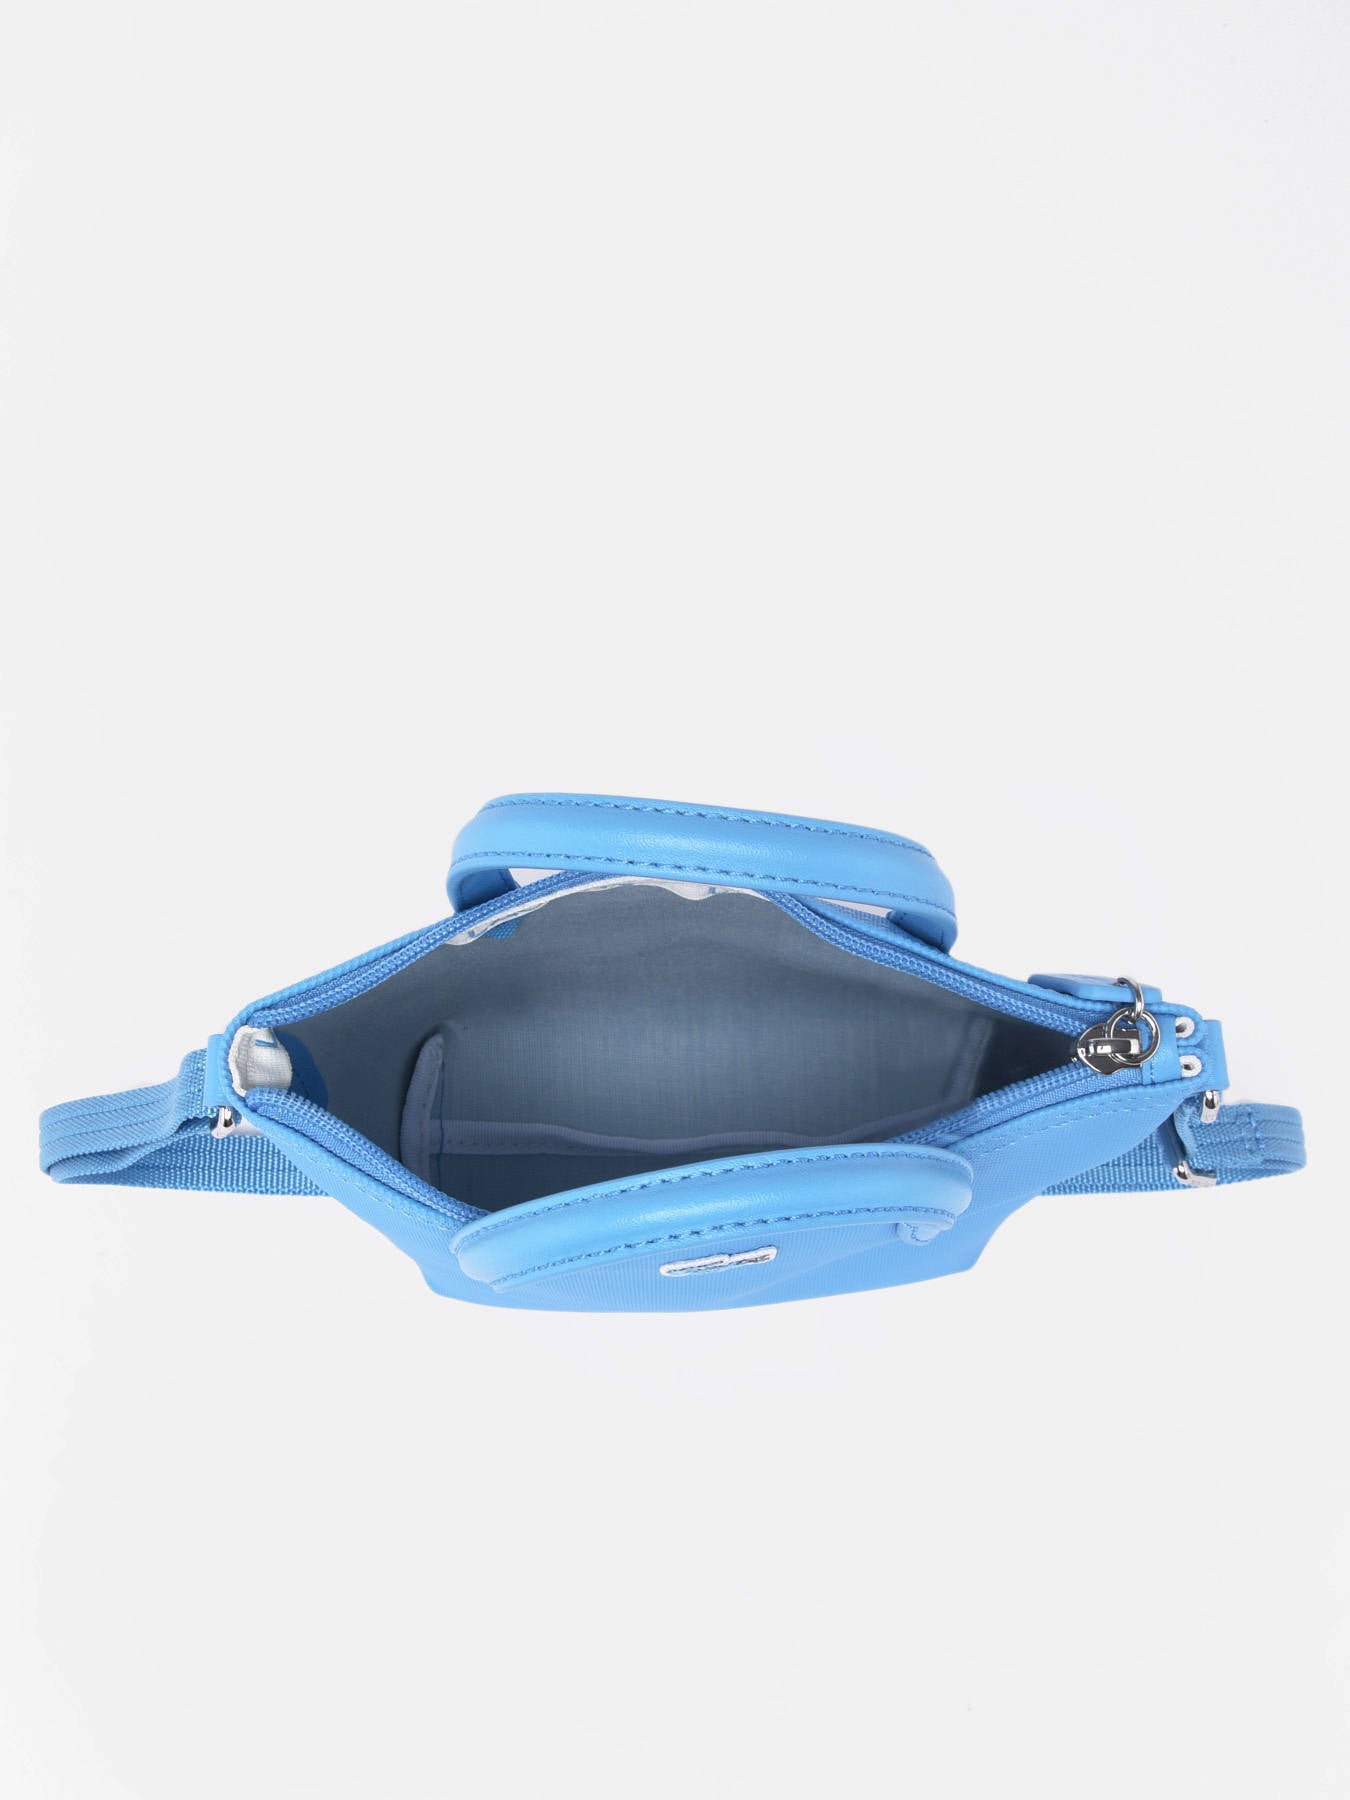 Lacoste - L.12.12 Concept Zip Tote Bag